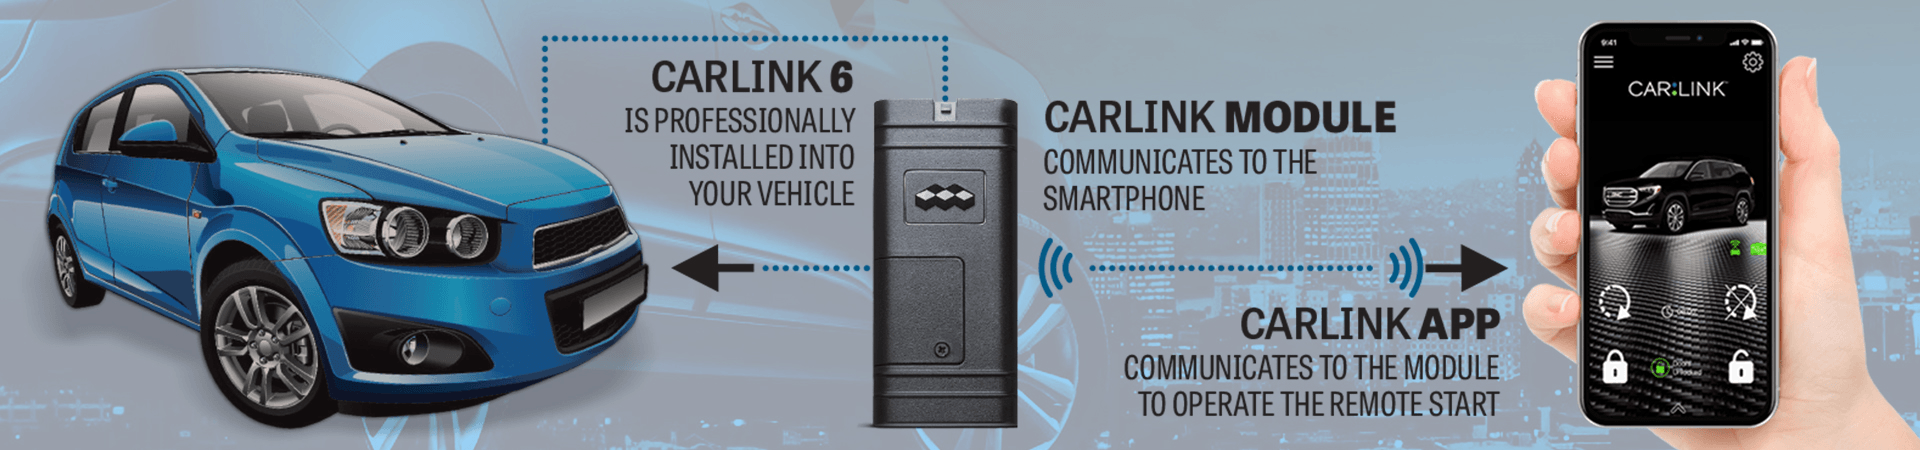 carlink-6-remote-starter